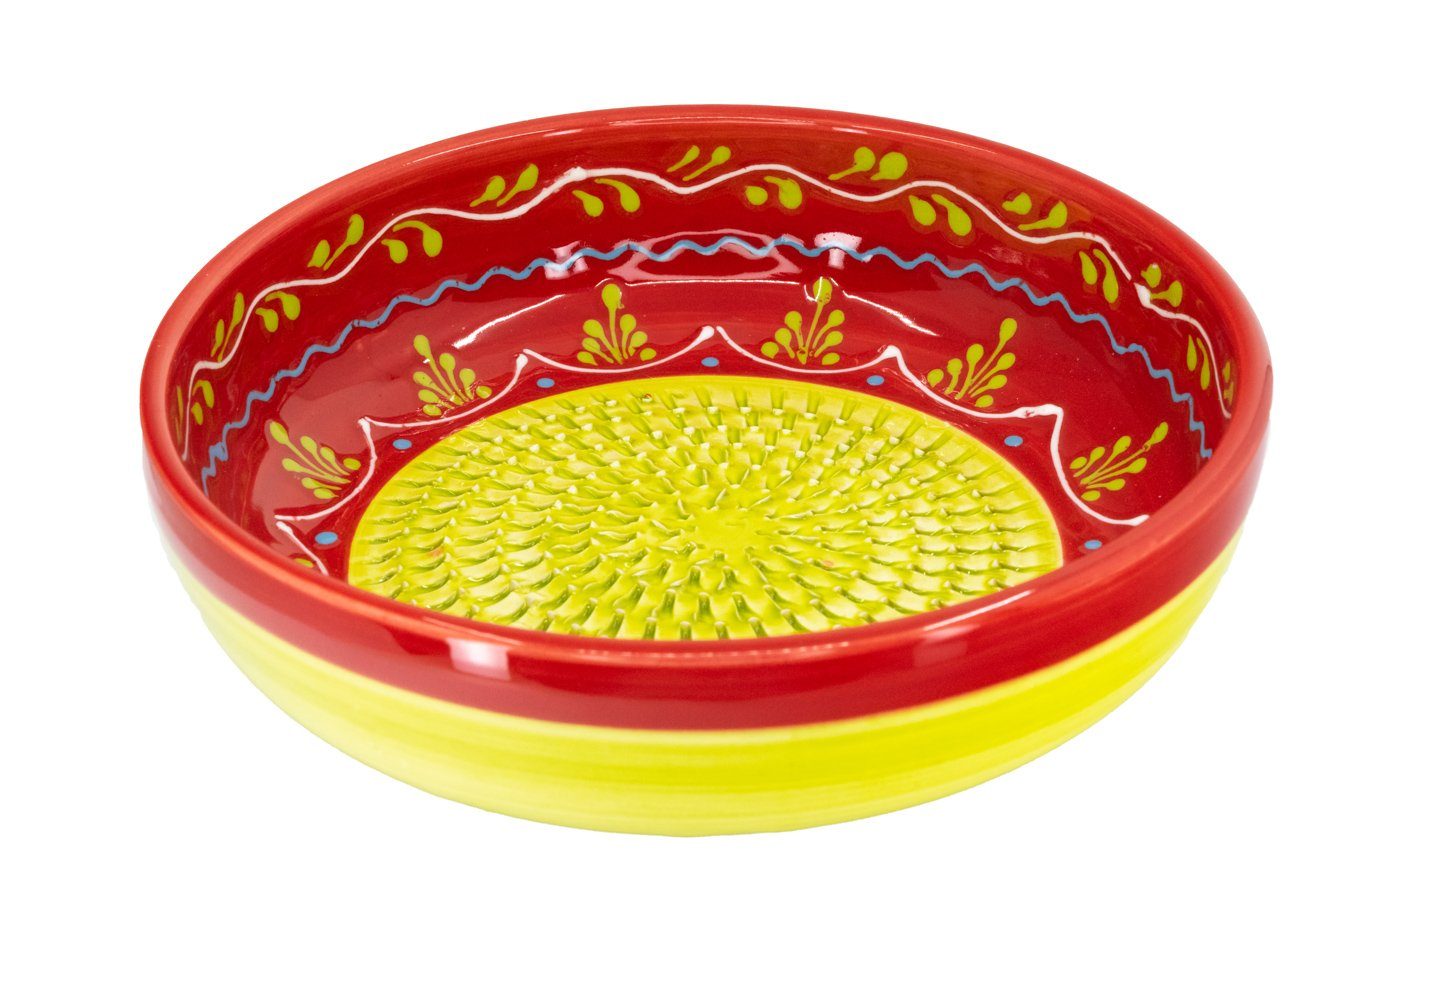 Spain Keramik, handbemalte Made in Reibeschüssel - Multireibe in Rot/Grün/Weiß, Kaladia Küchenreibe